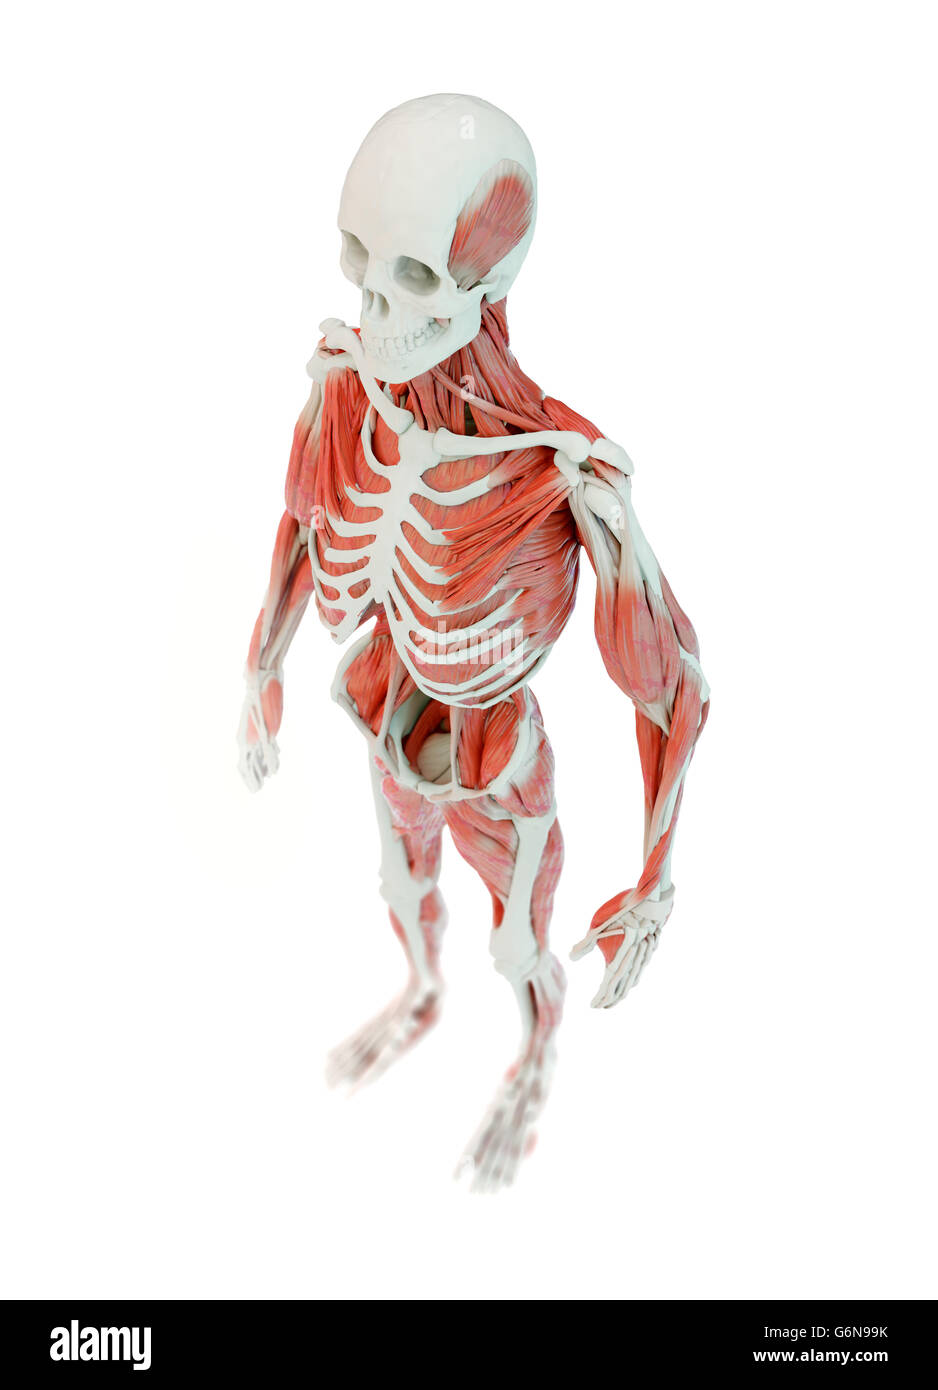 L'anatomie humaine musculaire en profondeur détaillée illustration Banque D'Images